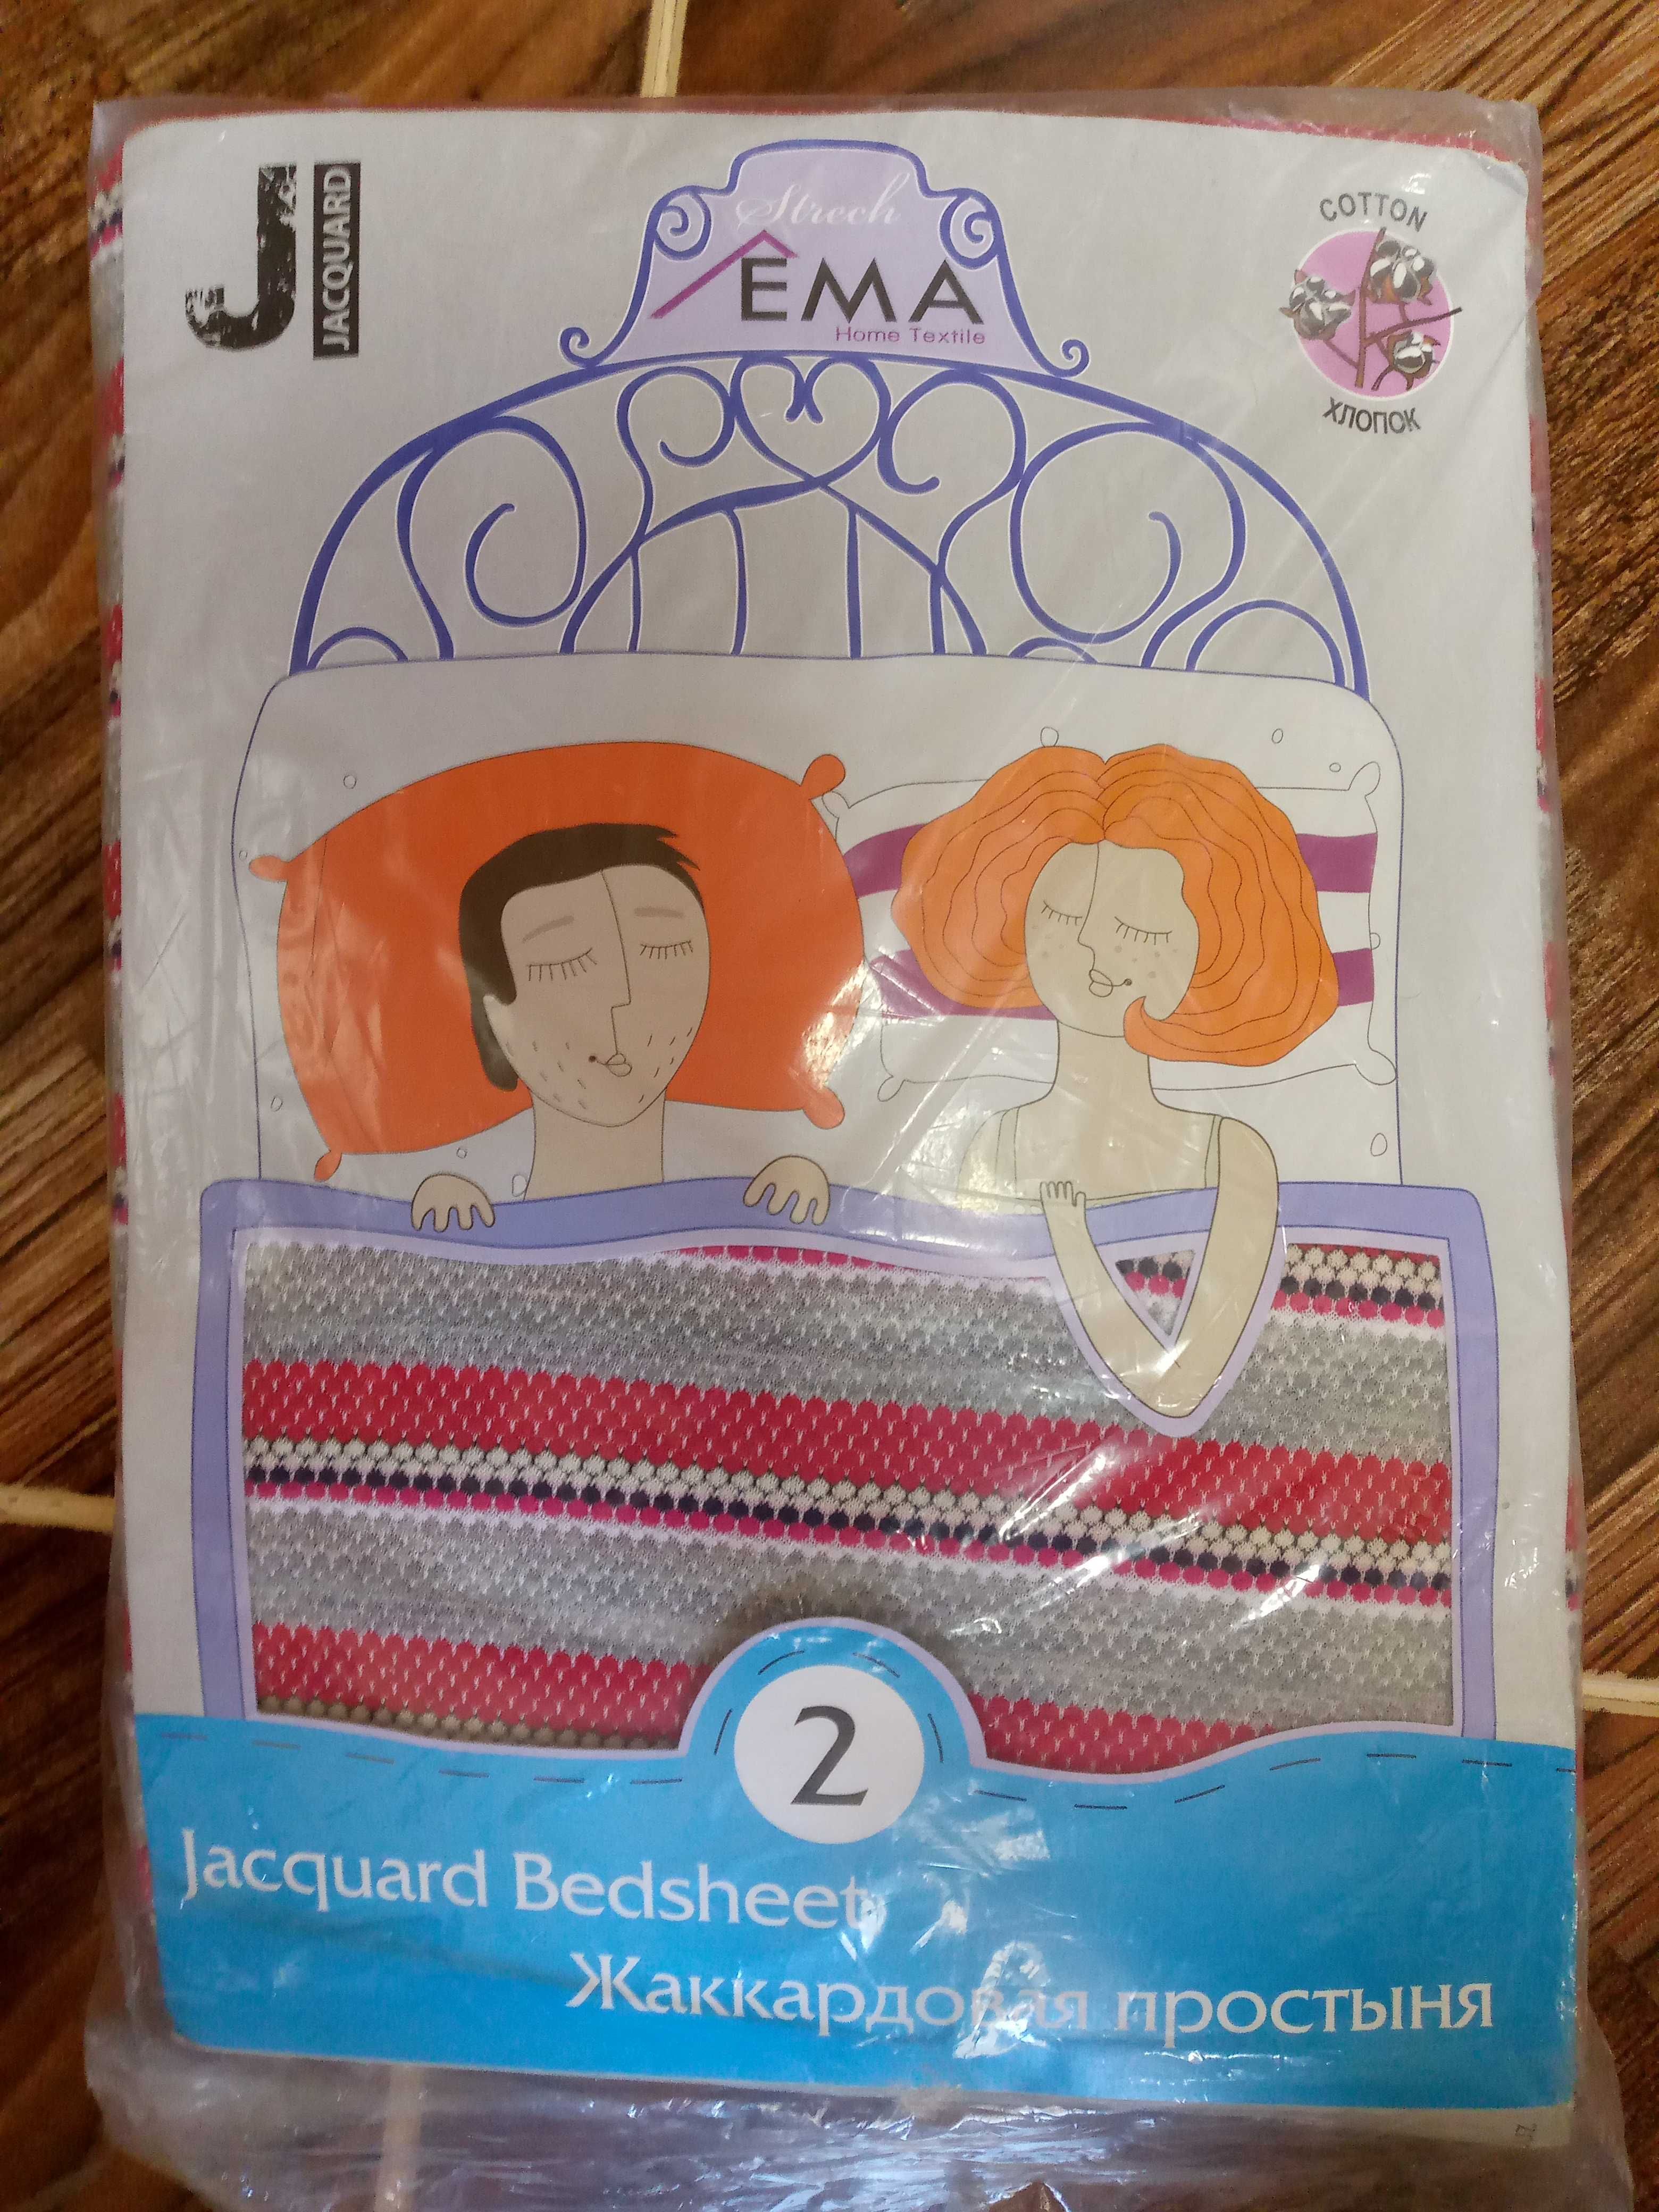 Новый постельный комплект EMA Textile.Цена 200 тысяч